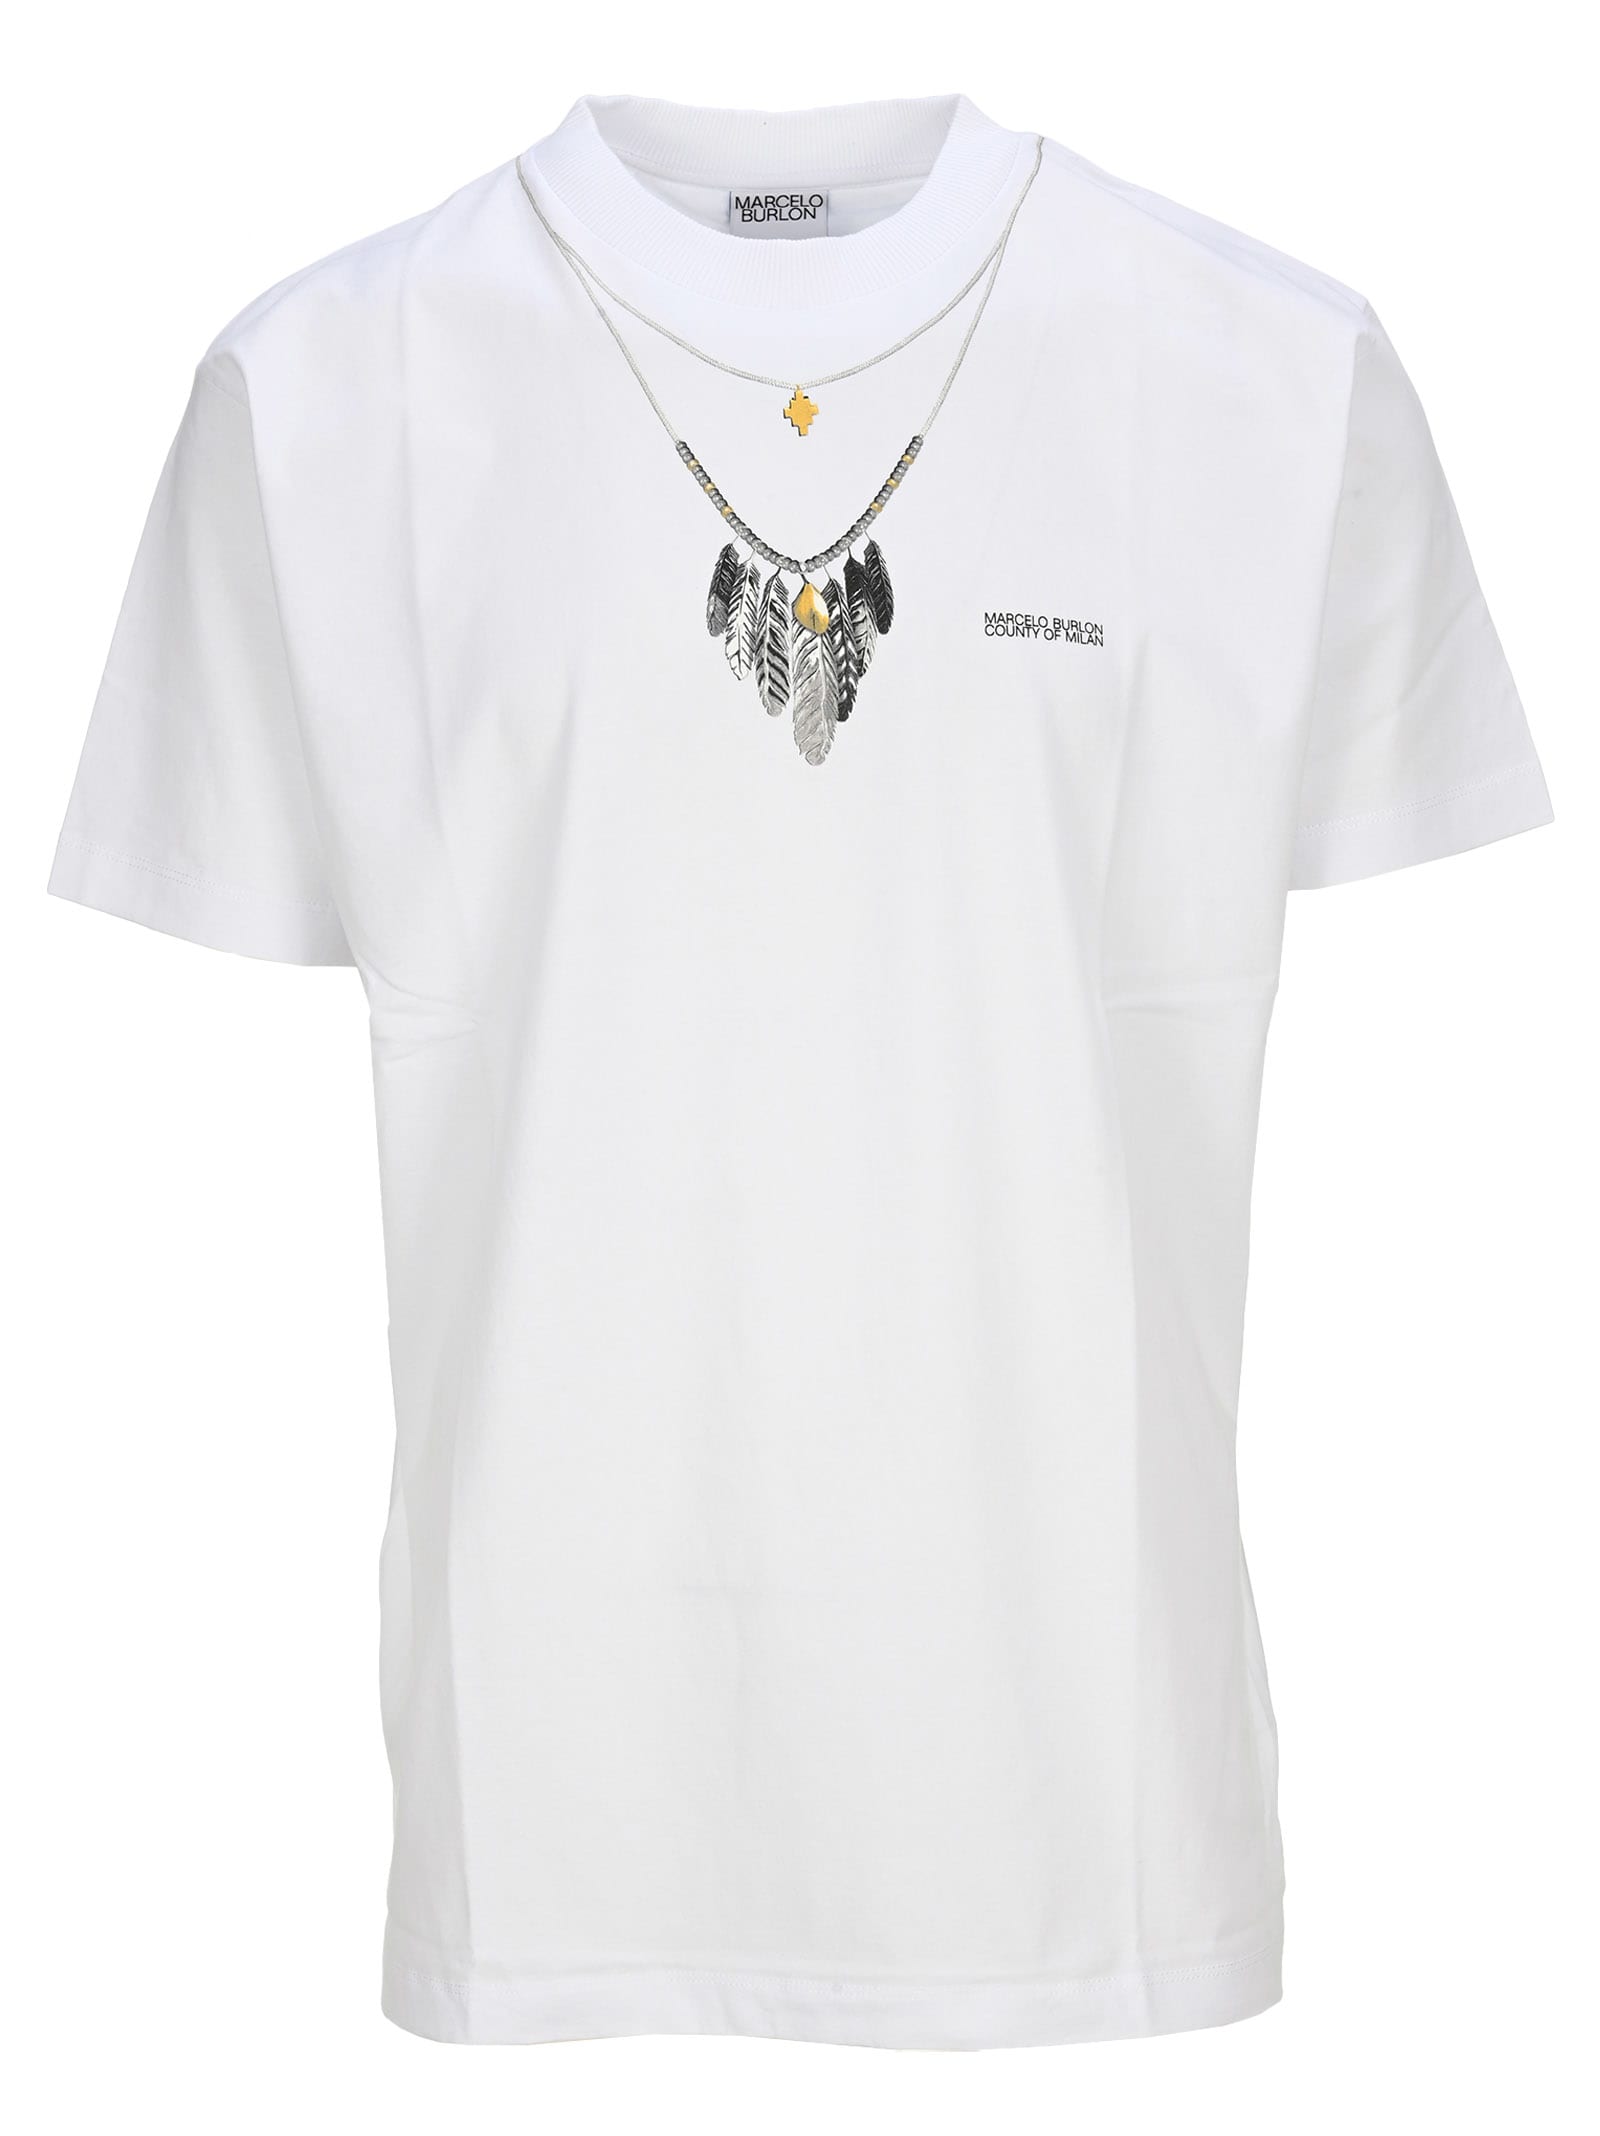 Marcelo Burlon Necklace T-shirt